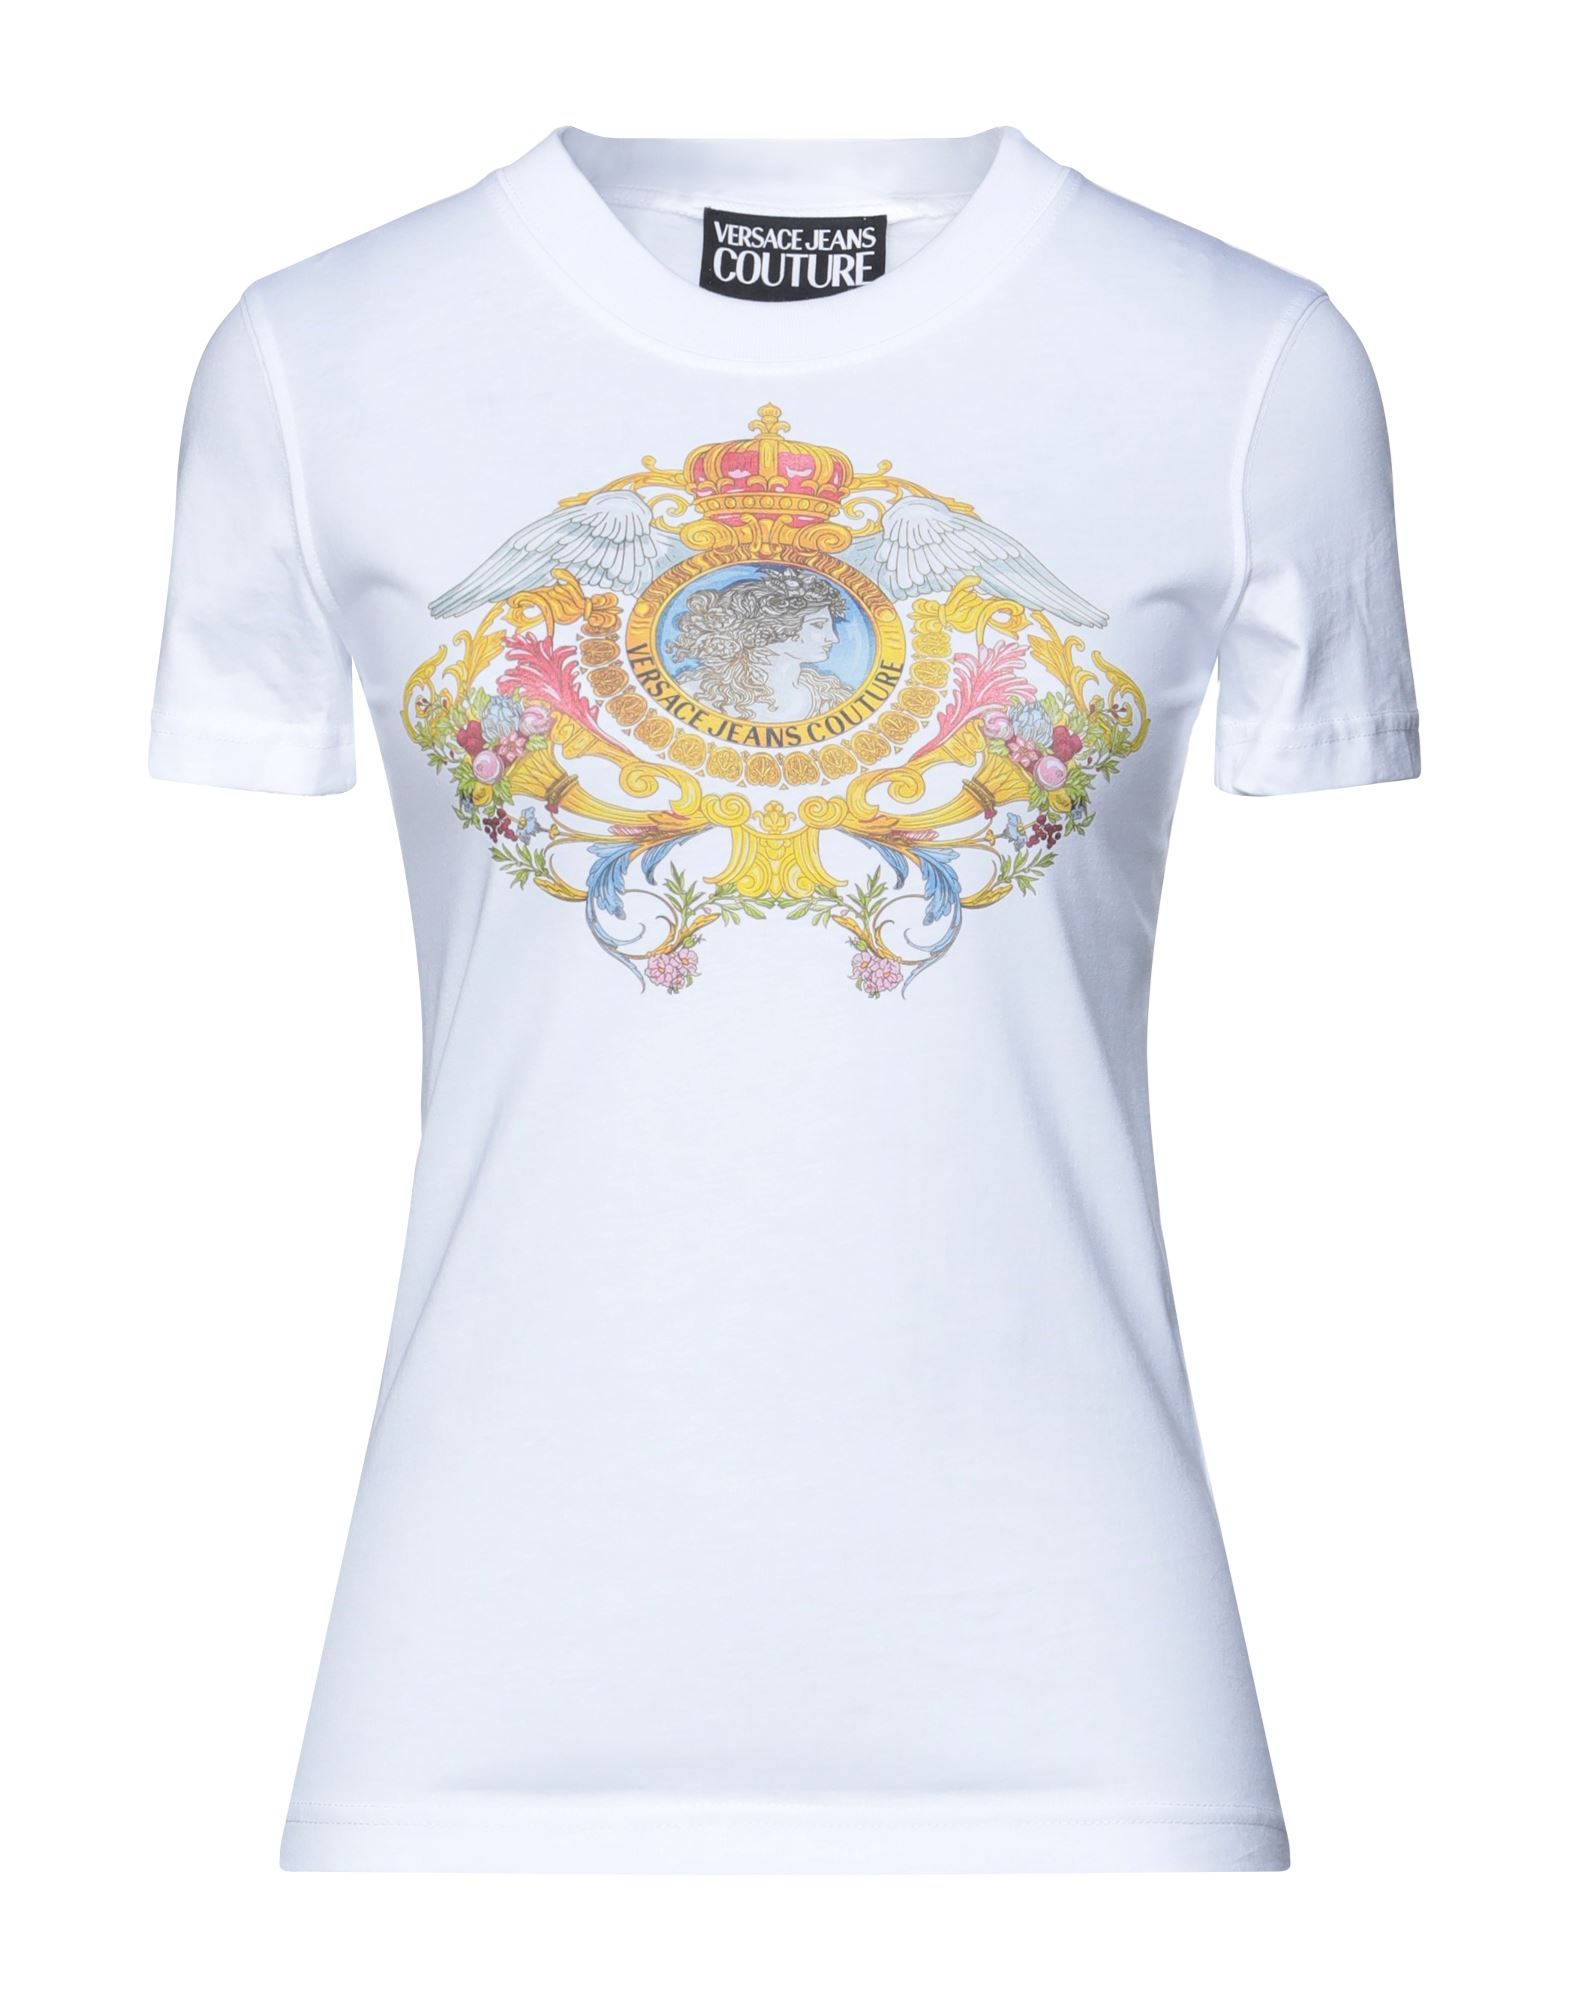 VERSACE JEANS COUTURE T-shirts Damen Weiß von VERSACE JEANS COUTURE